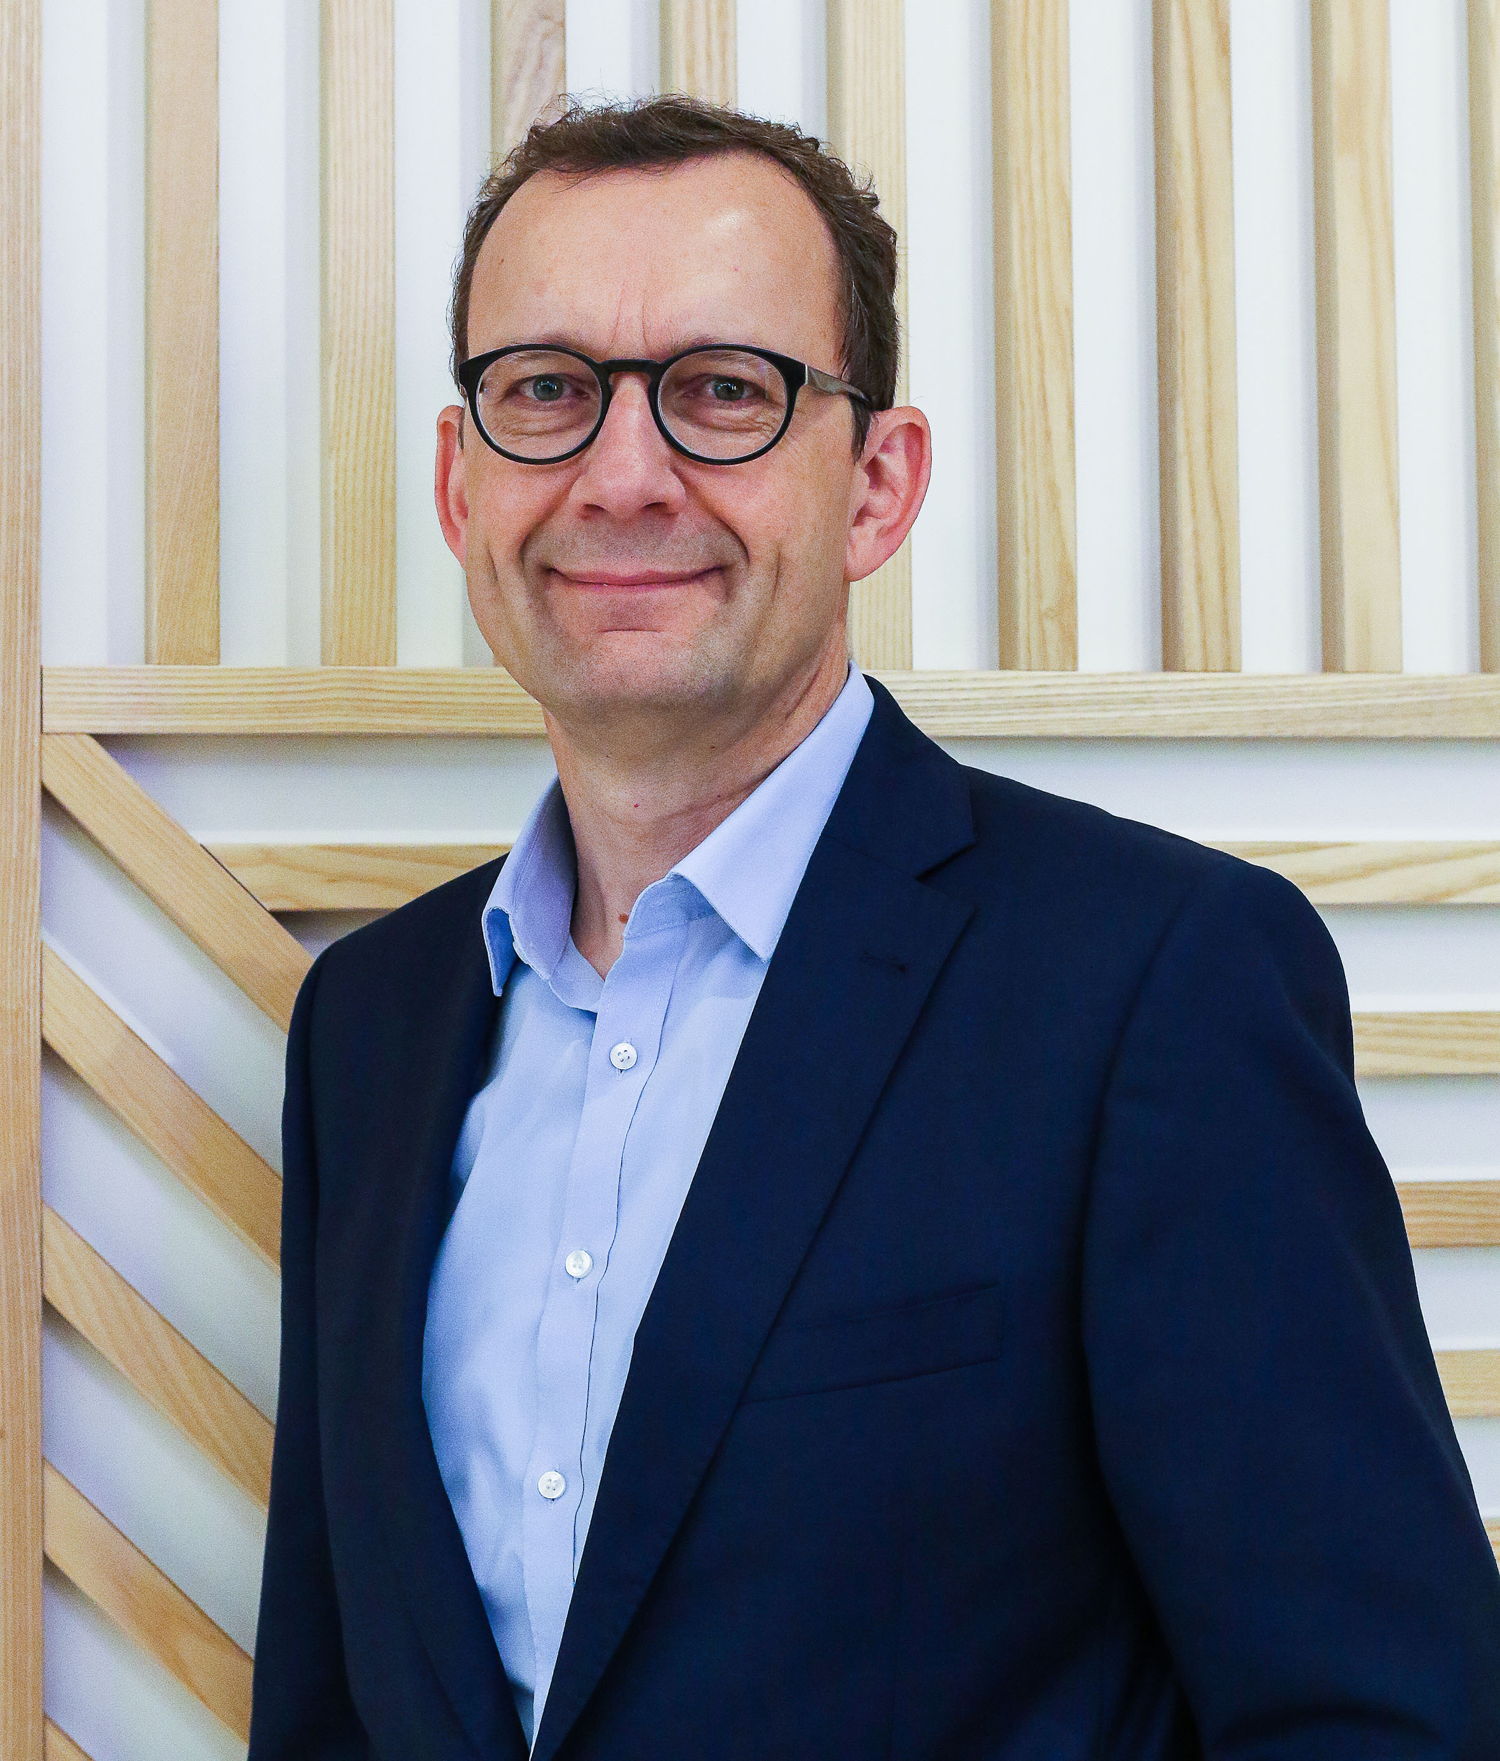 DKV Euro Service nomme Peter Meier au poste de directeur financier. Il prendra ses nouvelles fonctions le 2 janvier 2020. (Photo : DKV)